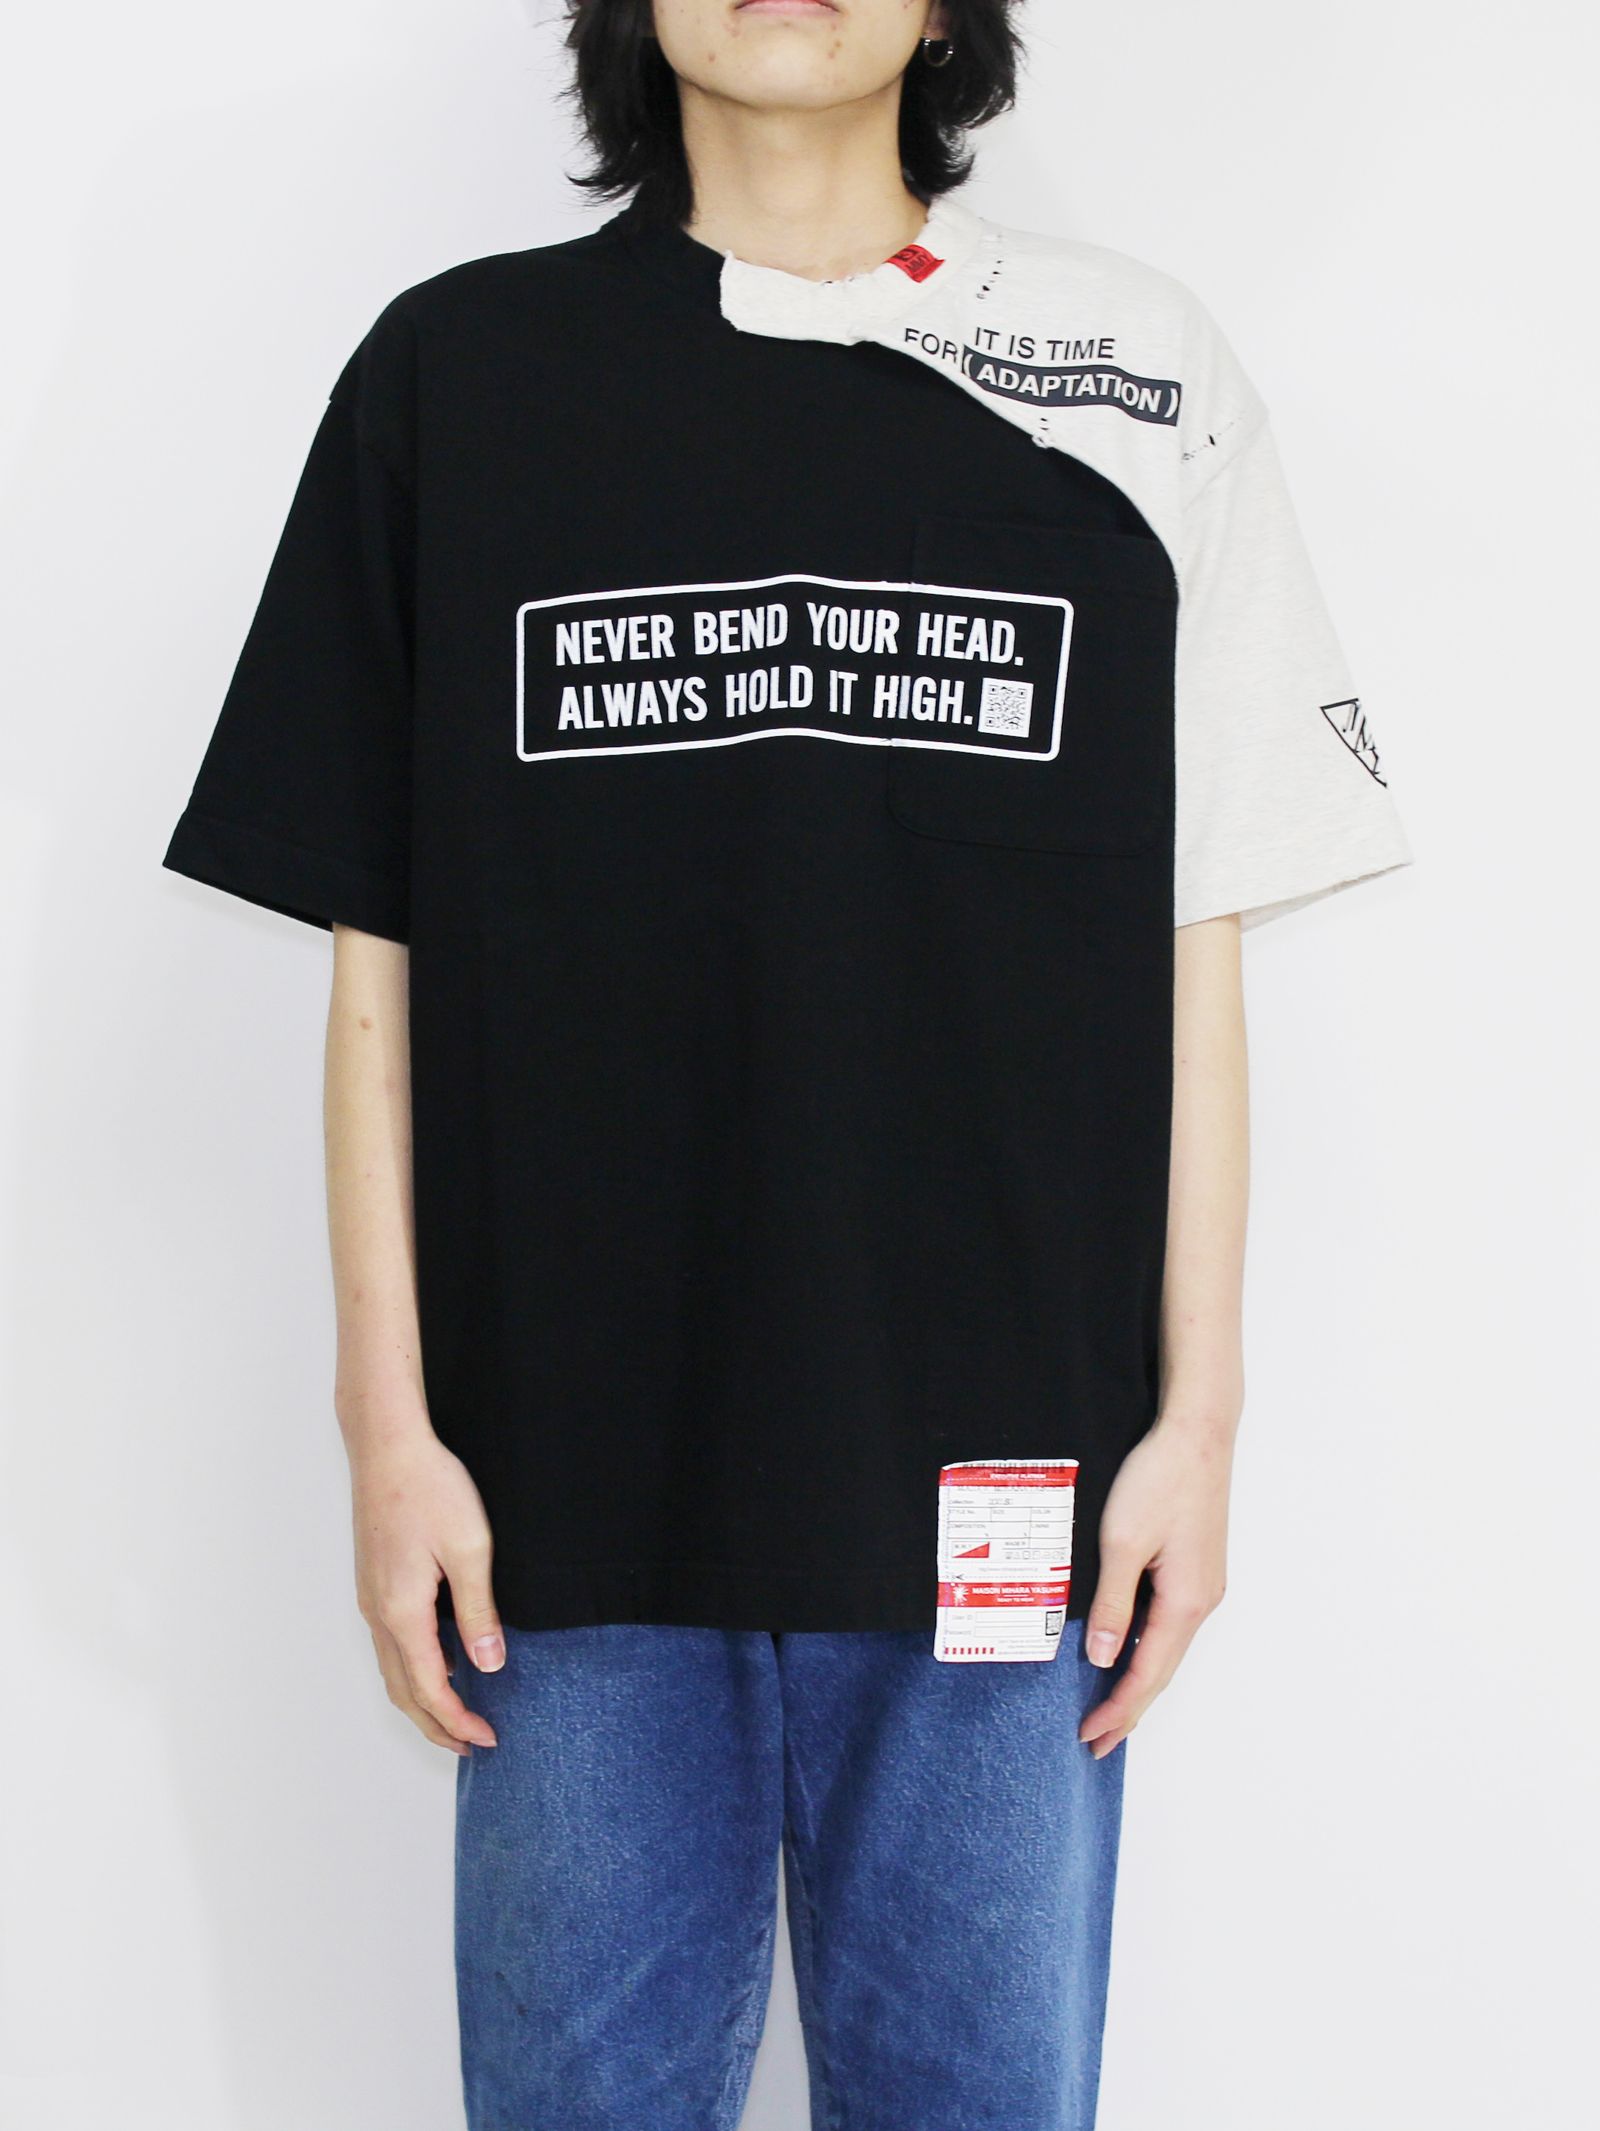 Maison MIHARA YASUHIRO   レイヤードティーシャツ   layerd T shirt